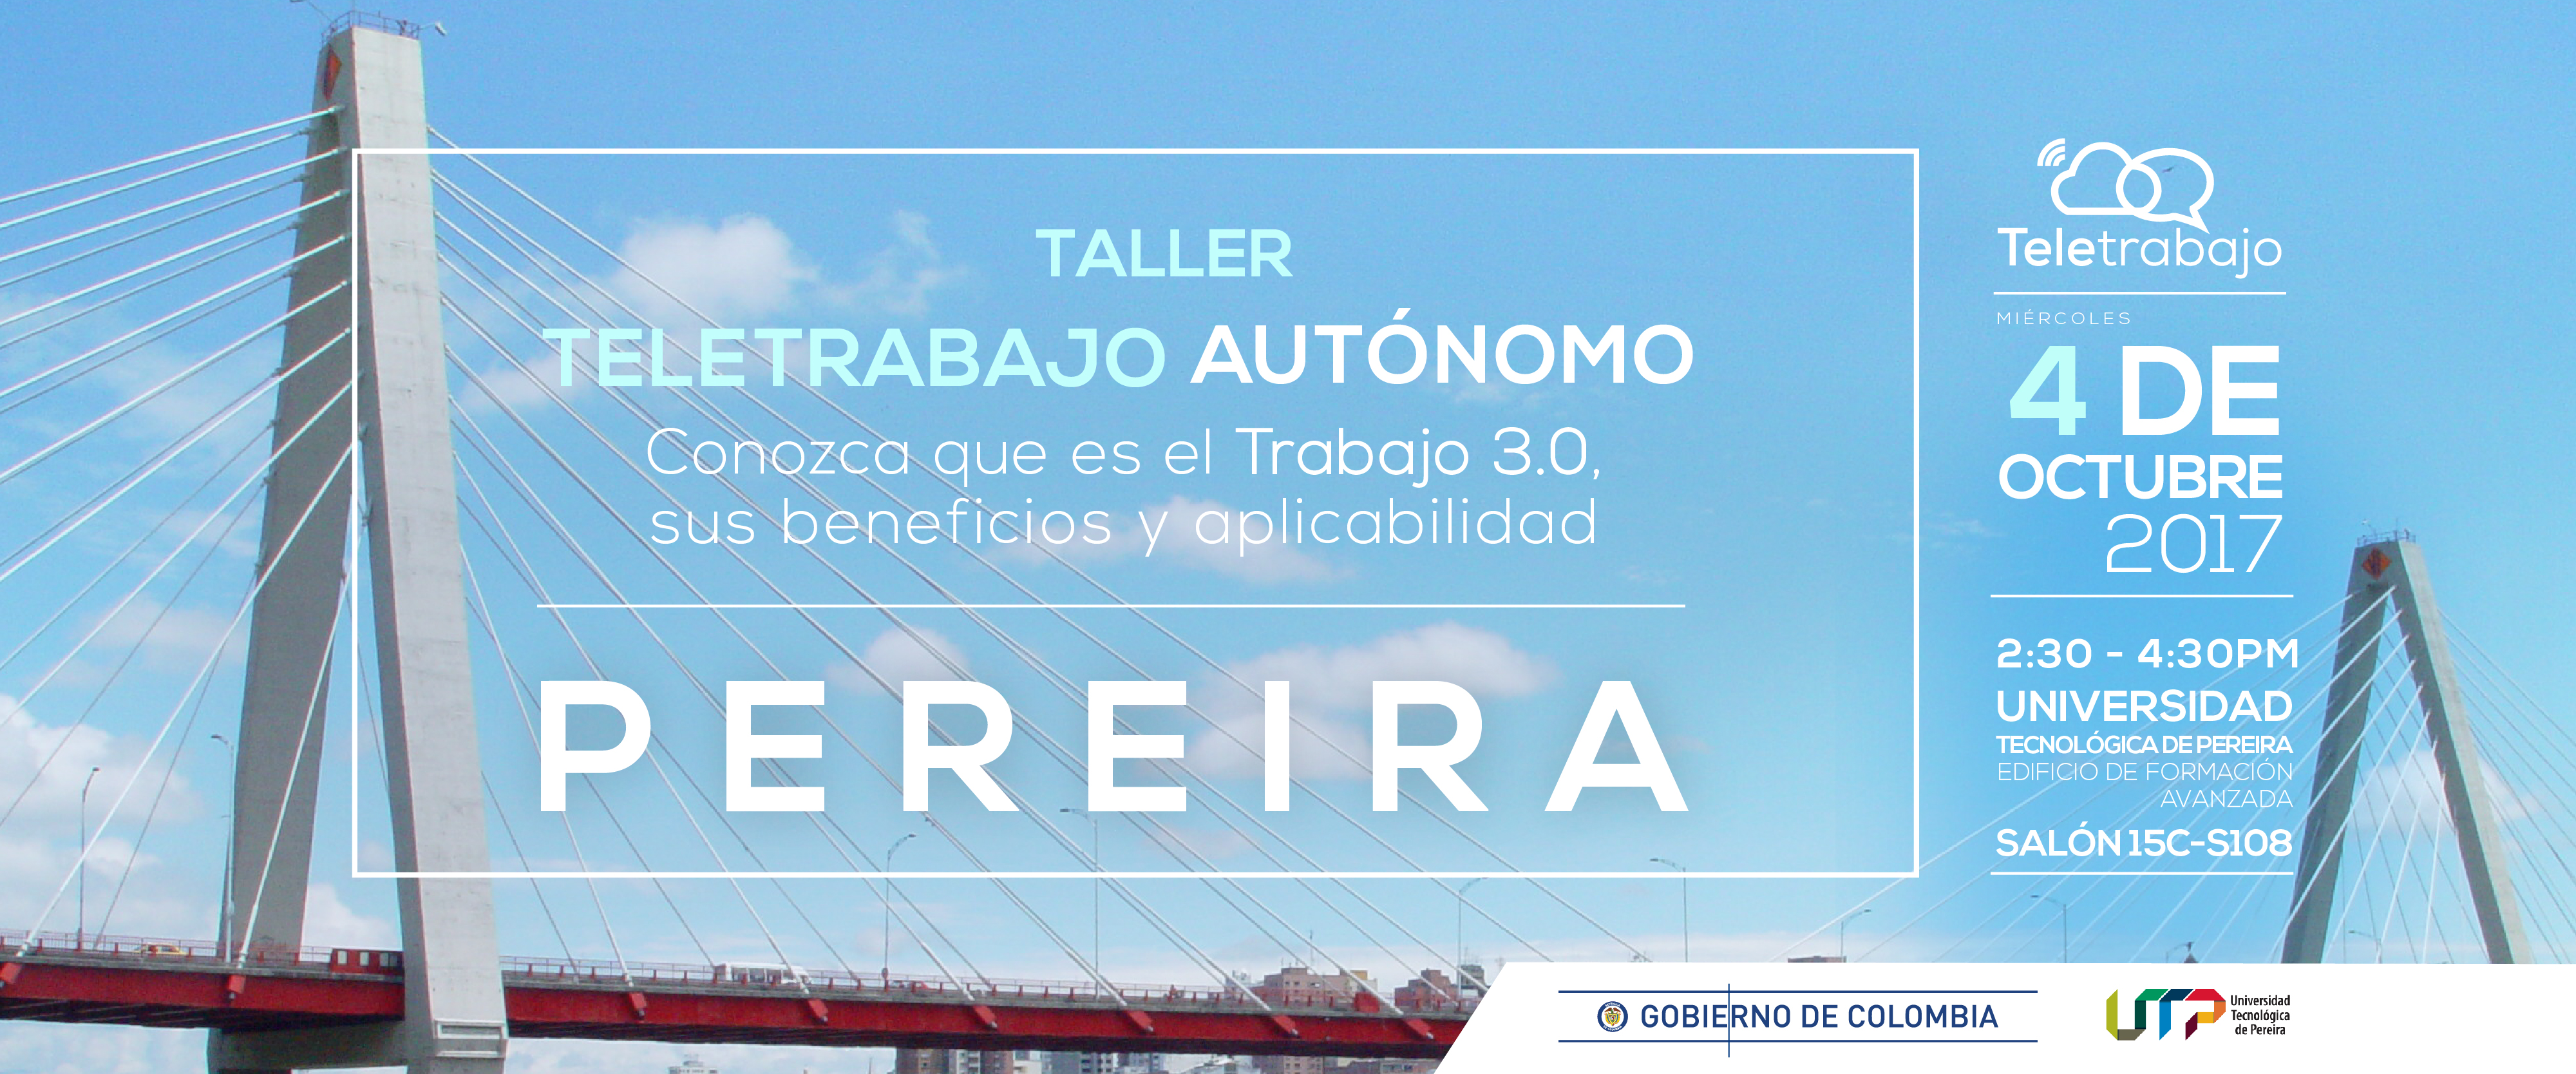 Taller de teletrabajo llega a la Universidad Tecnológica de Pereira